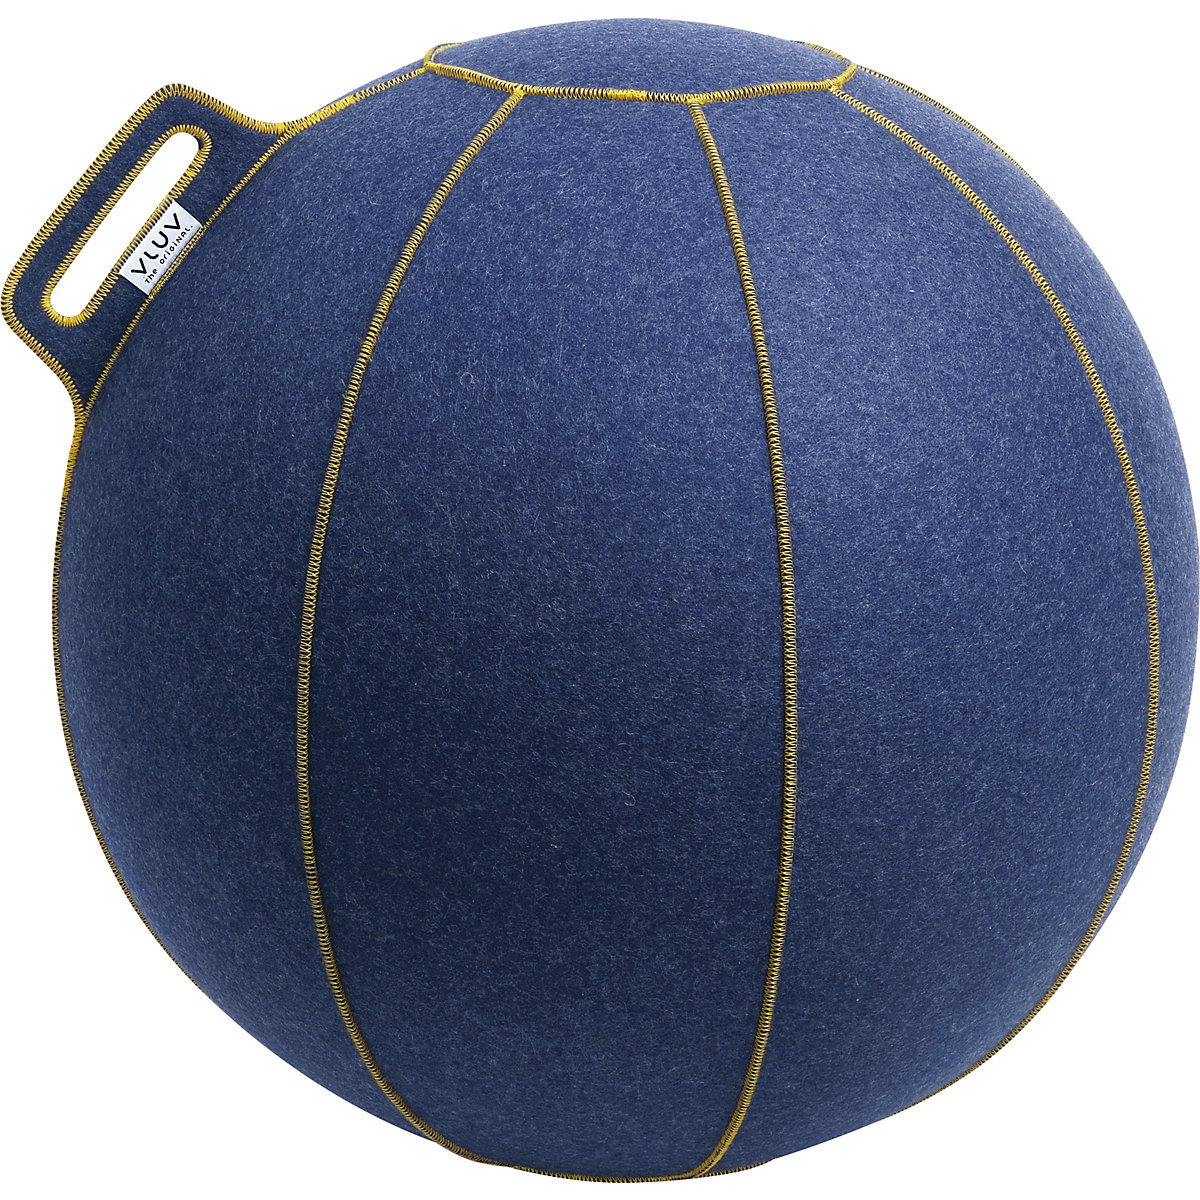 Fitball VELT – VLUV, in feltro di lana merino, 600 – 650 mm, jeans-screziato/oro-7